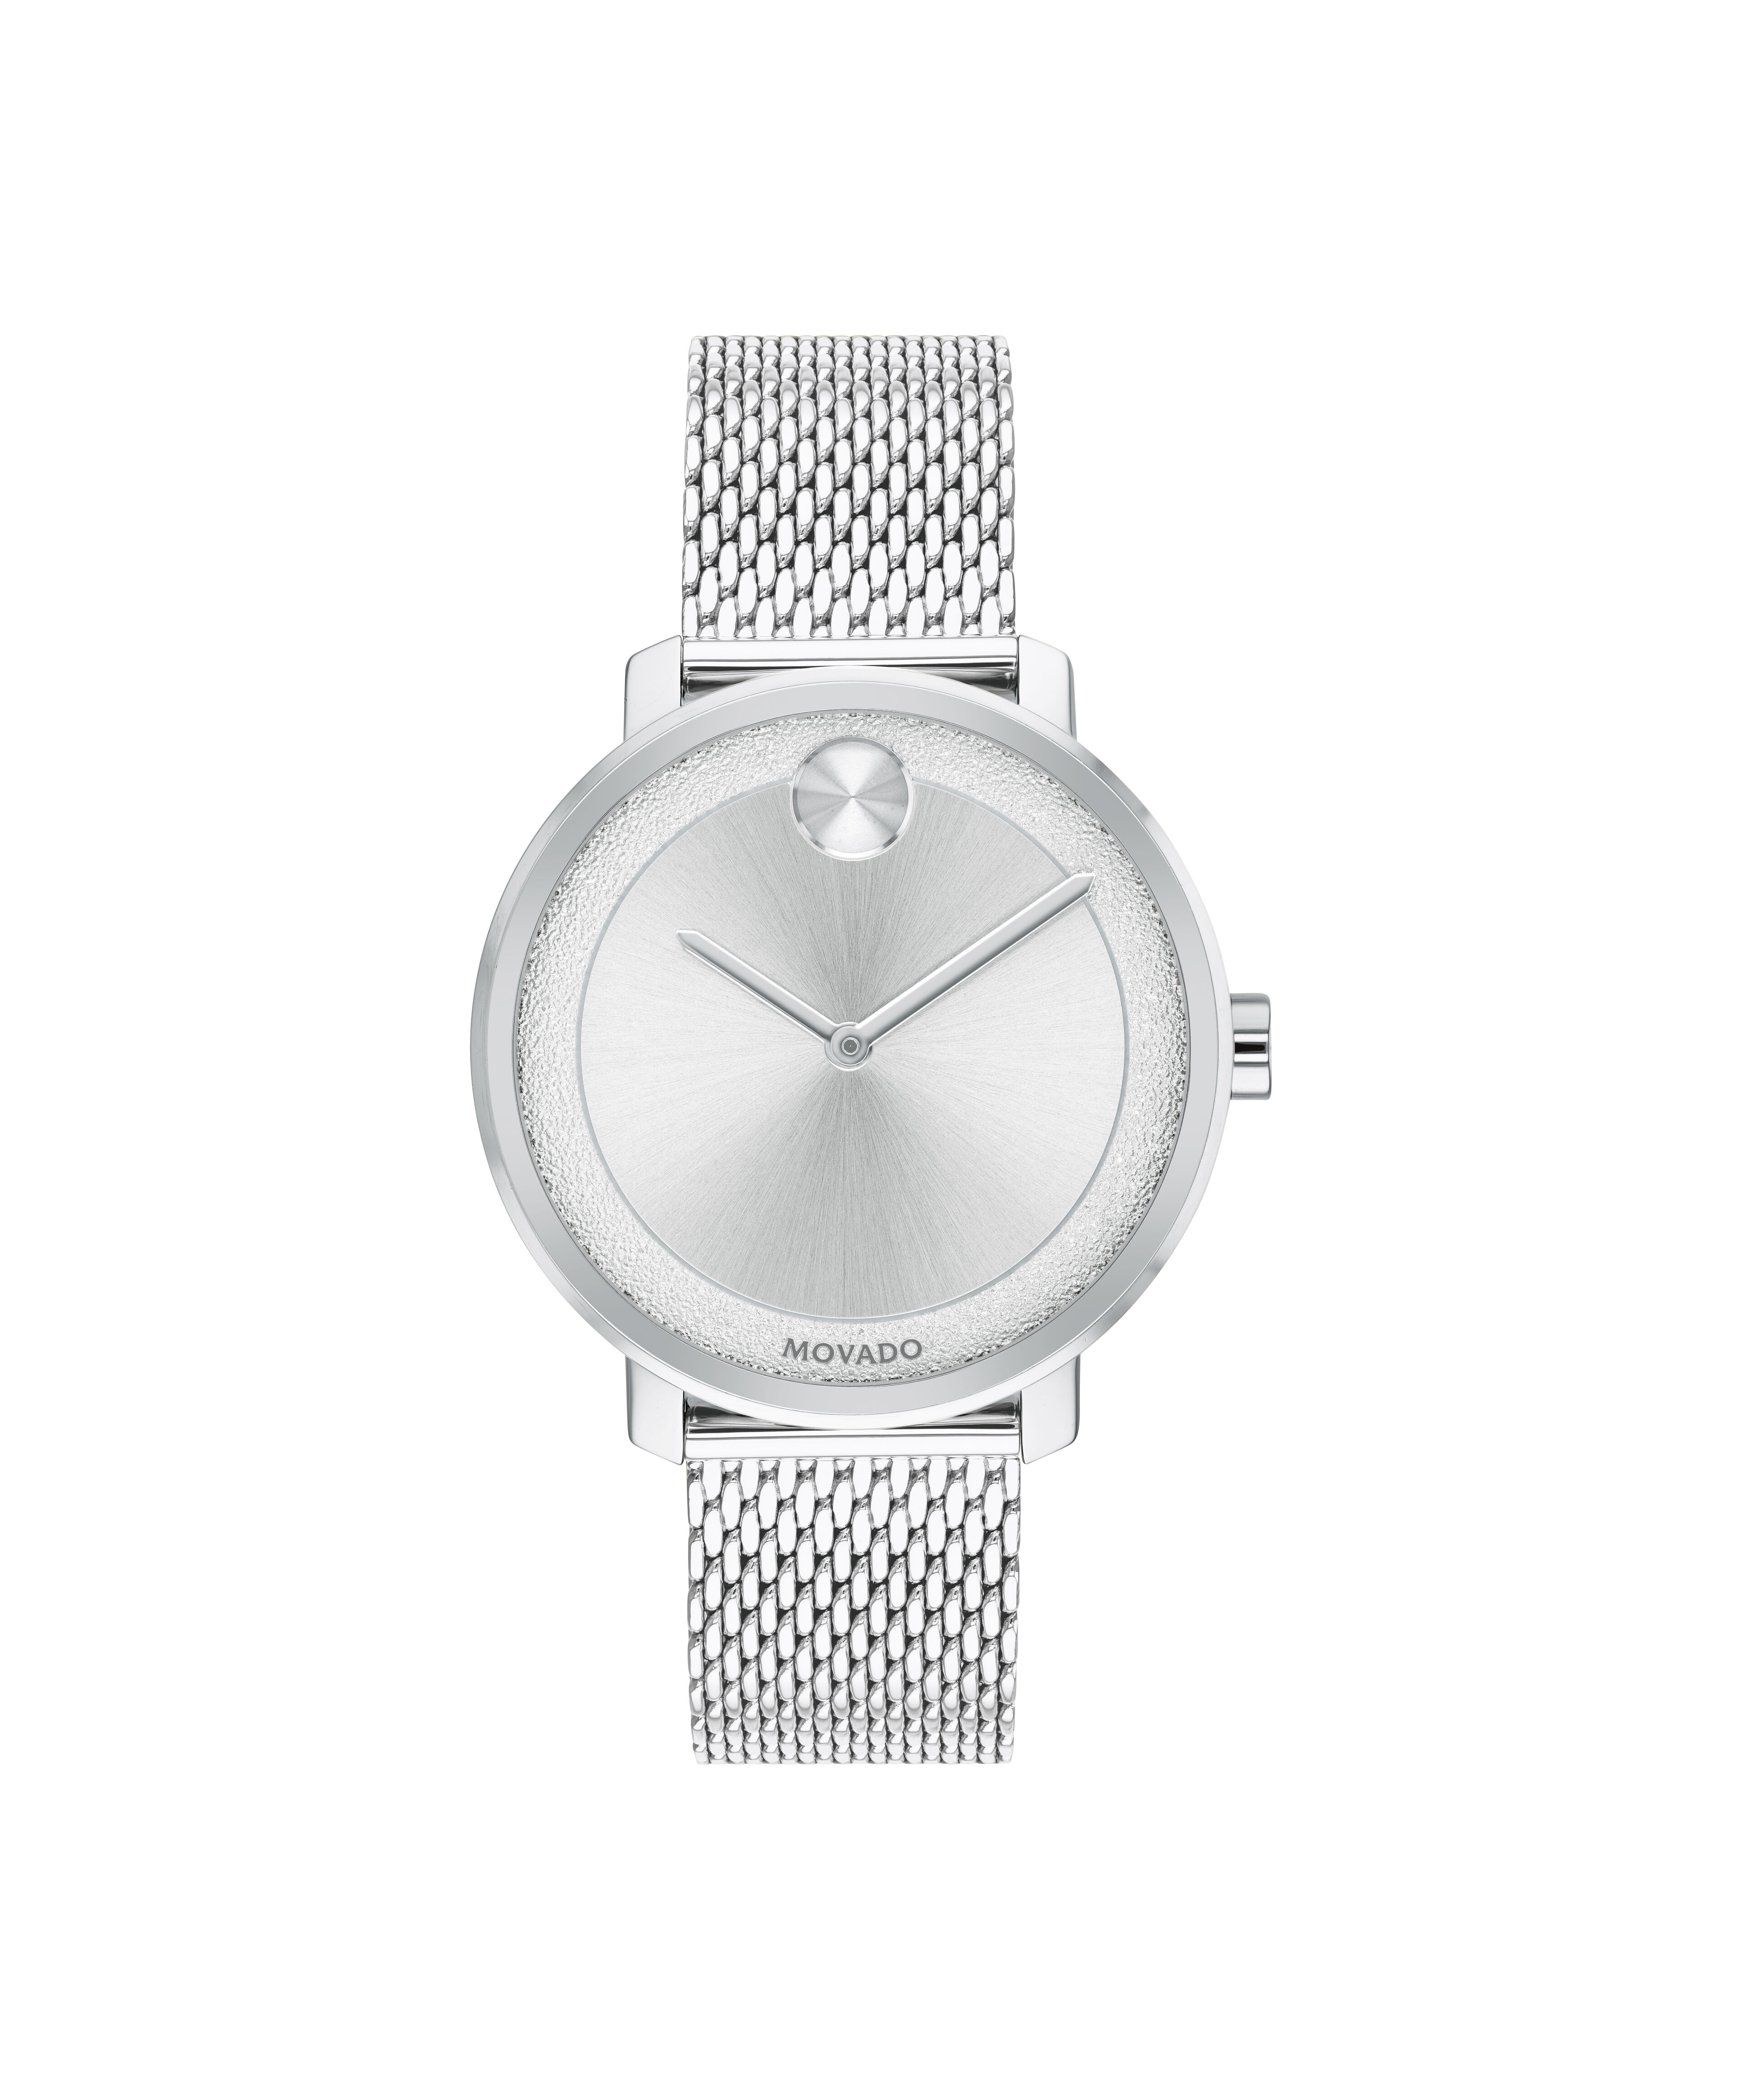 Movado Men's Wristwatch 99-C6-1881Movado Horizon Diamond